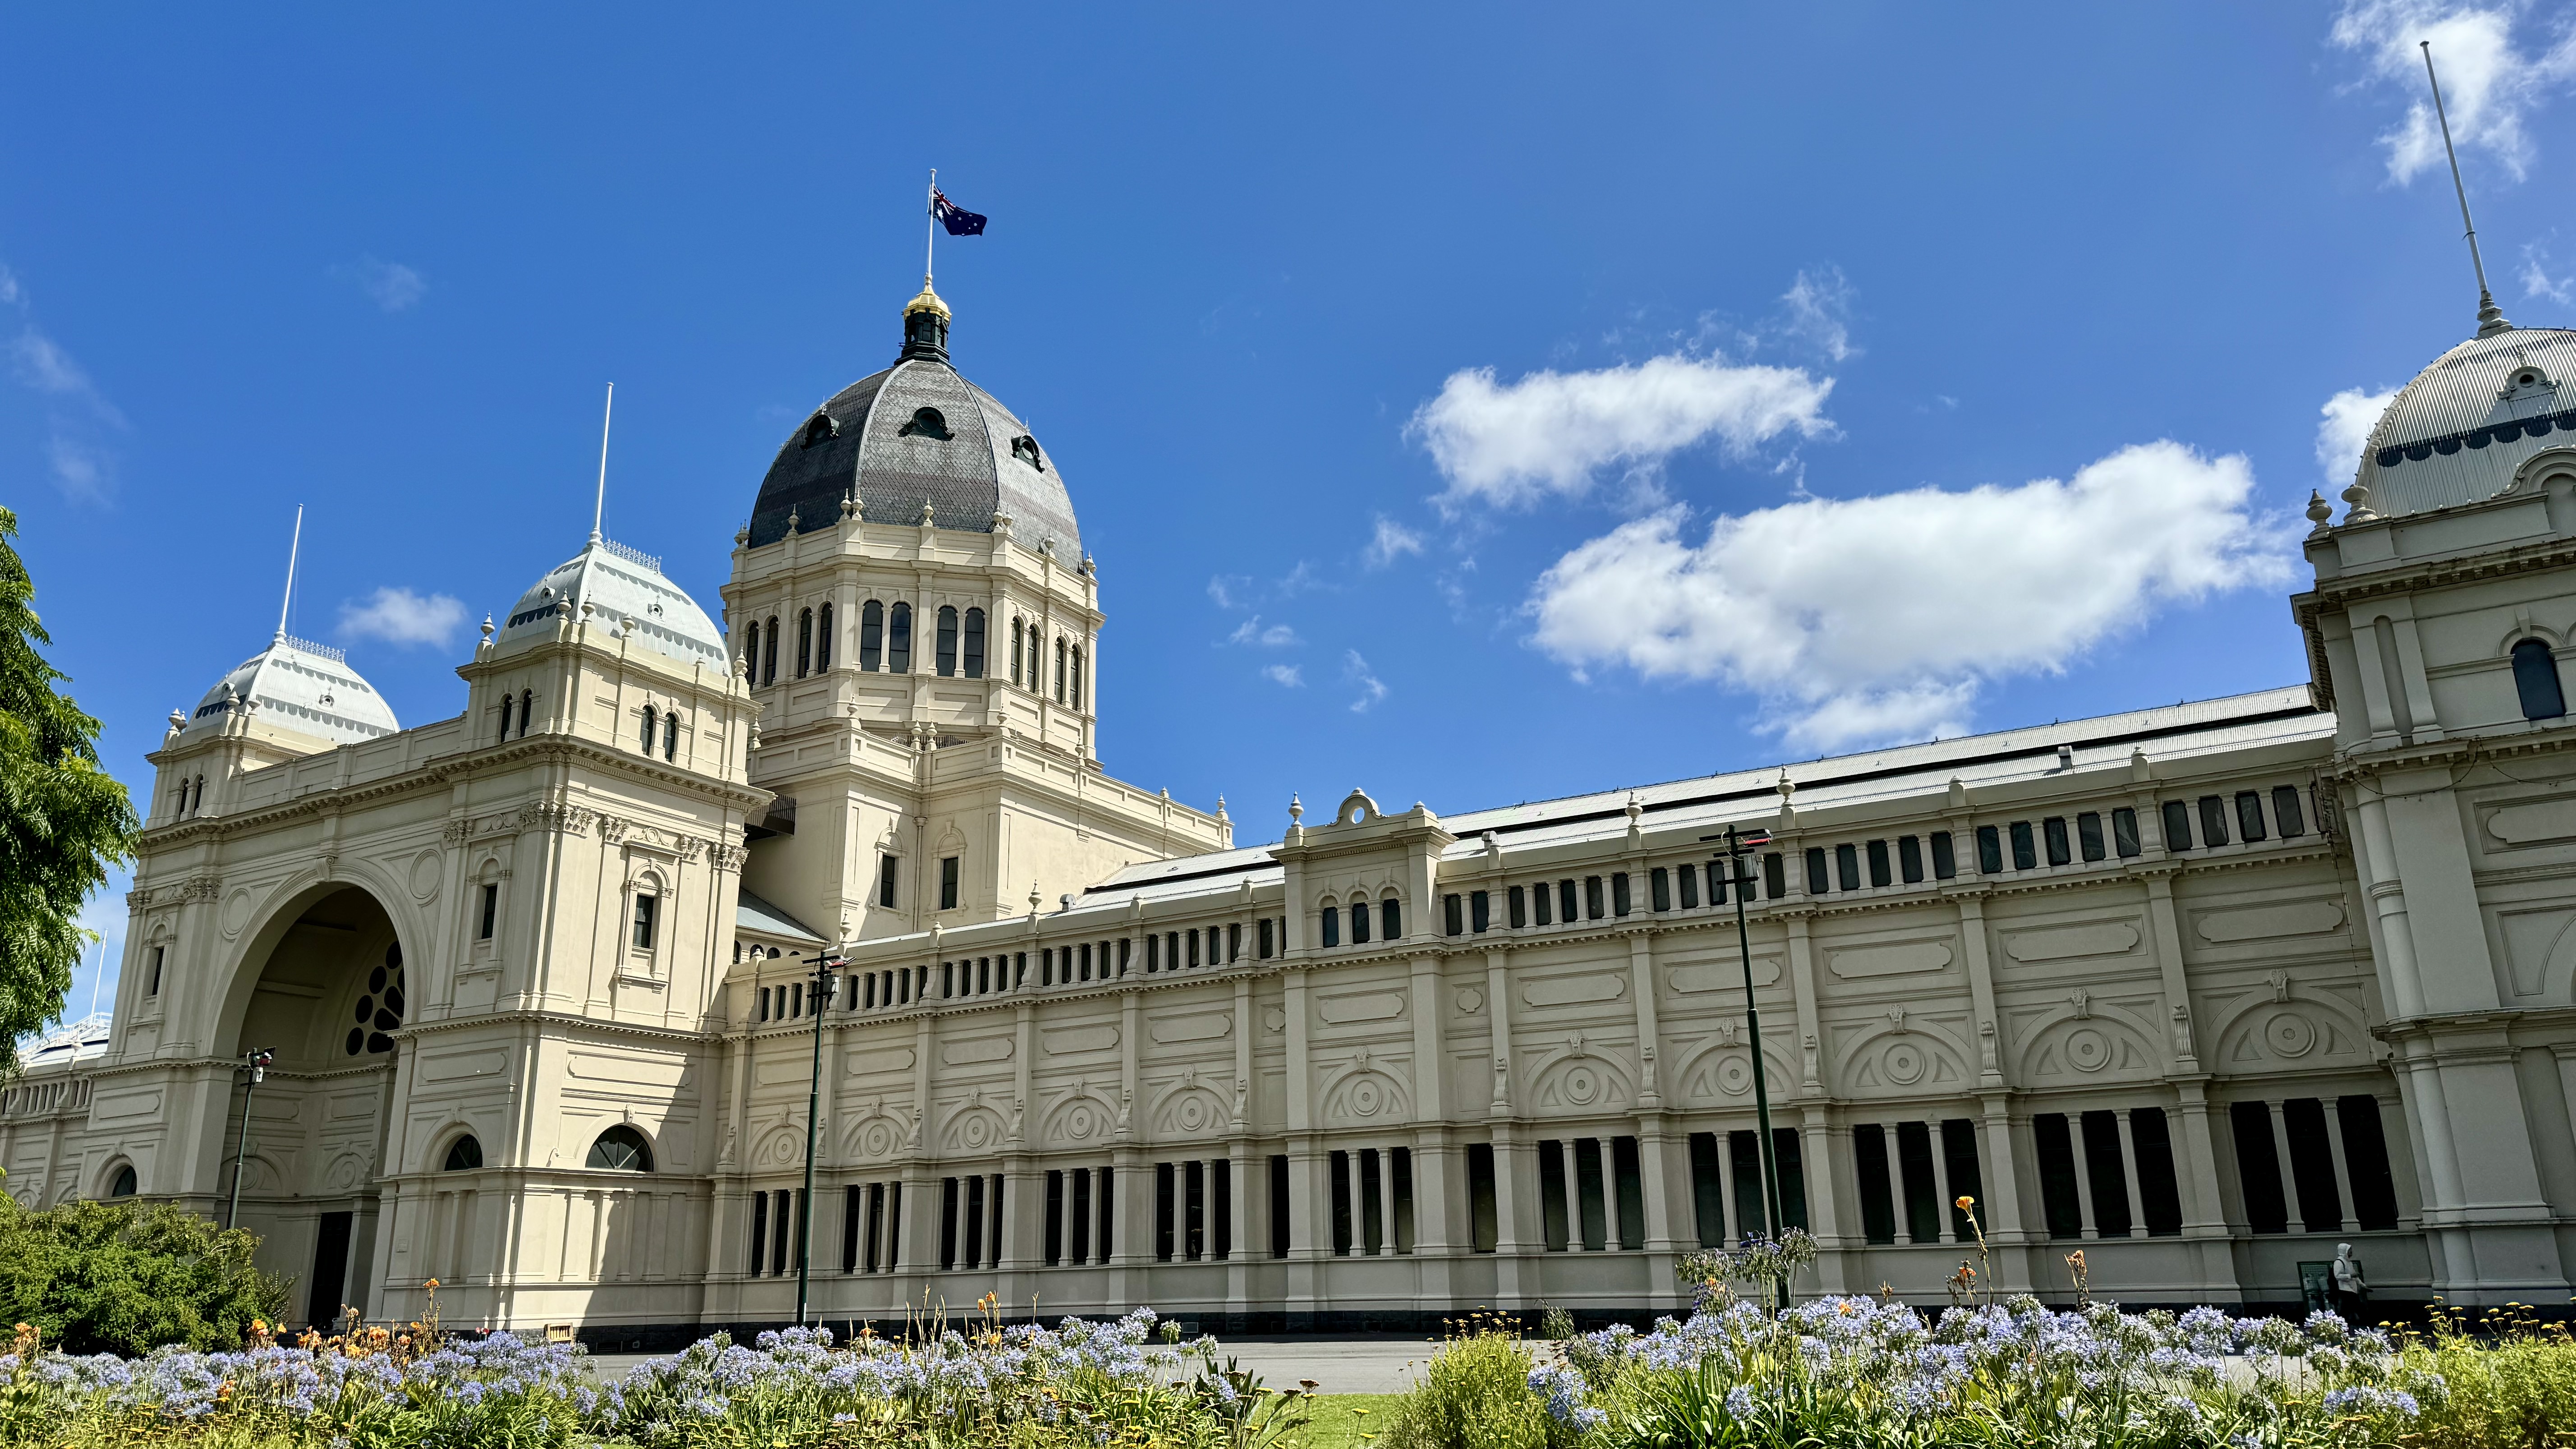 Melbourne
                            Royal Exhibition Building - Photographer
                            John McGregor John Karmouche